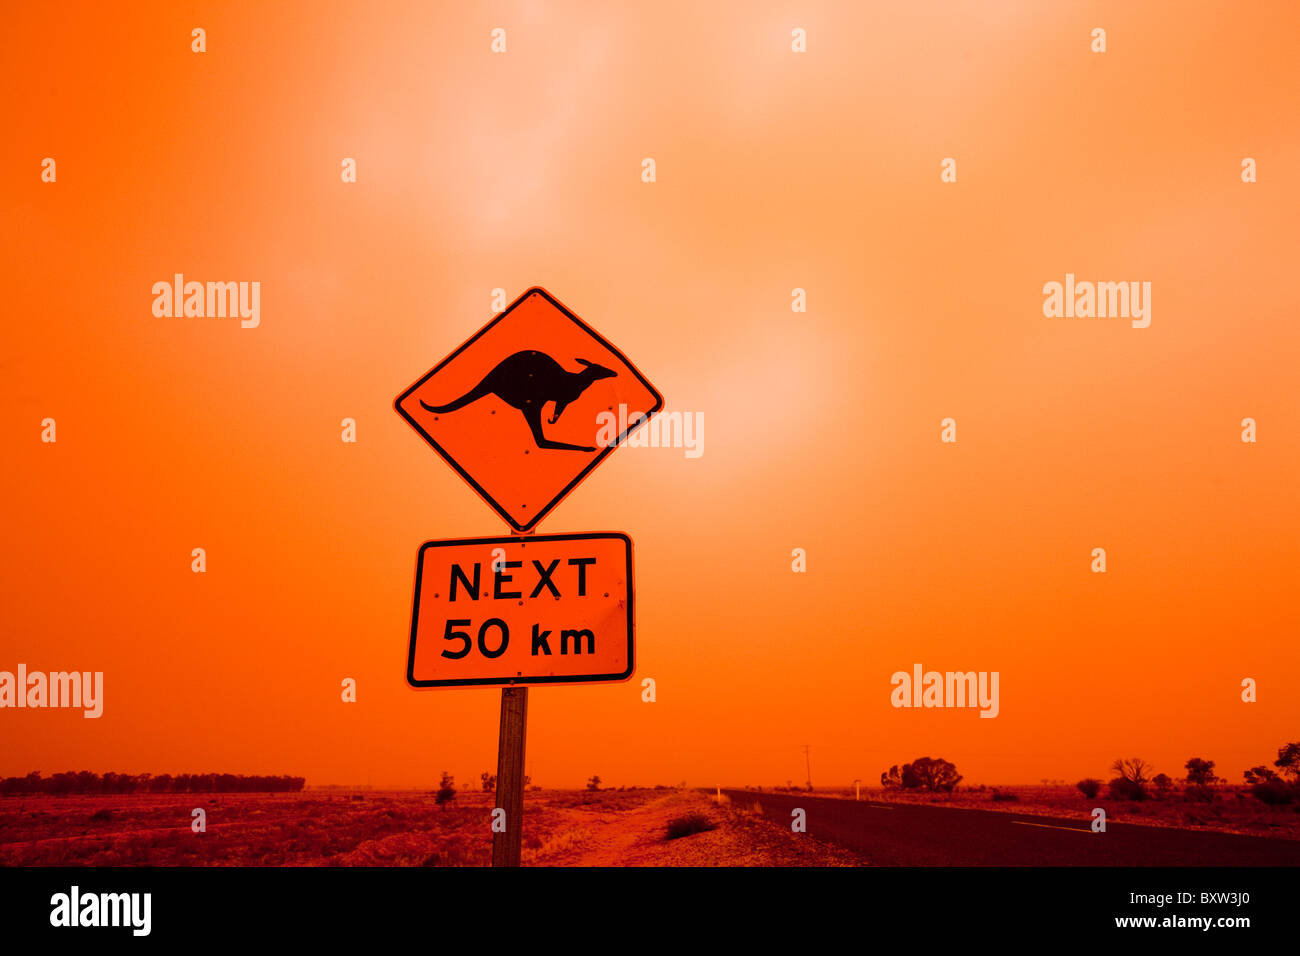 Australien New South Wales Ivanhoe Kangaroo Crossing Straße Warnzeichen im Outback Staubsturm ländlichen Highway auf Sommer Stockfoto